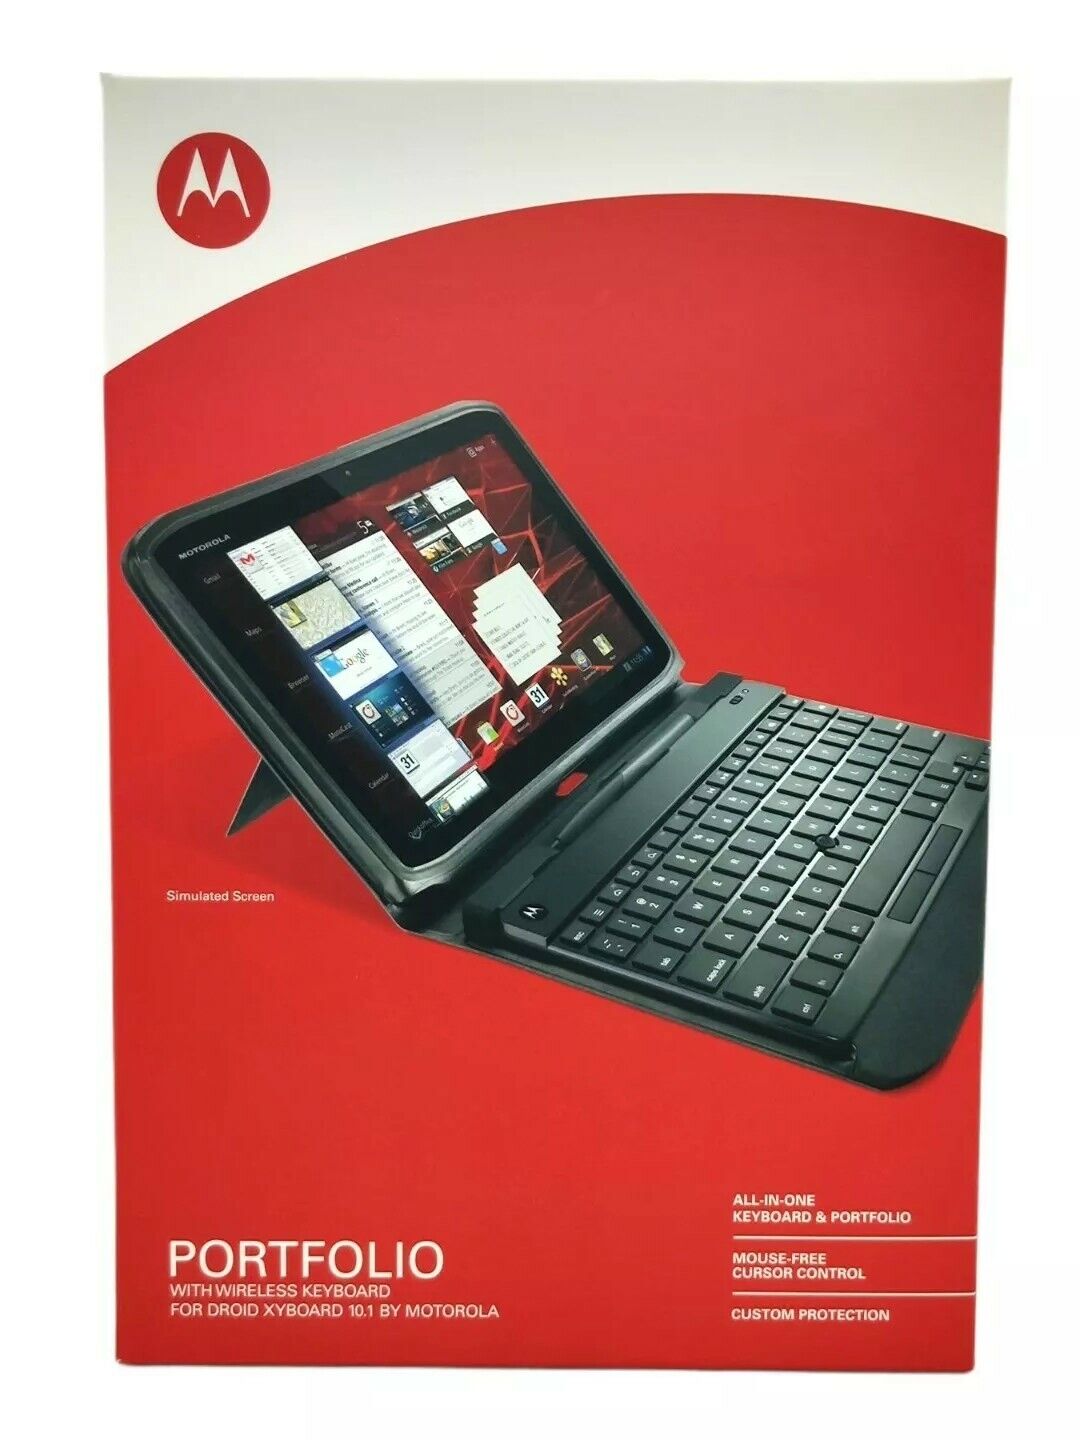 Portfolio With Wireless Keyboard For Motorola Droid XYboard 10.1